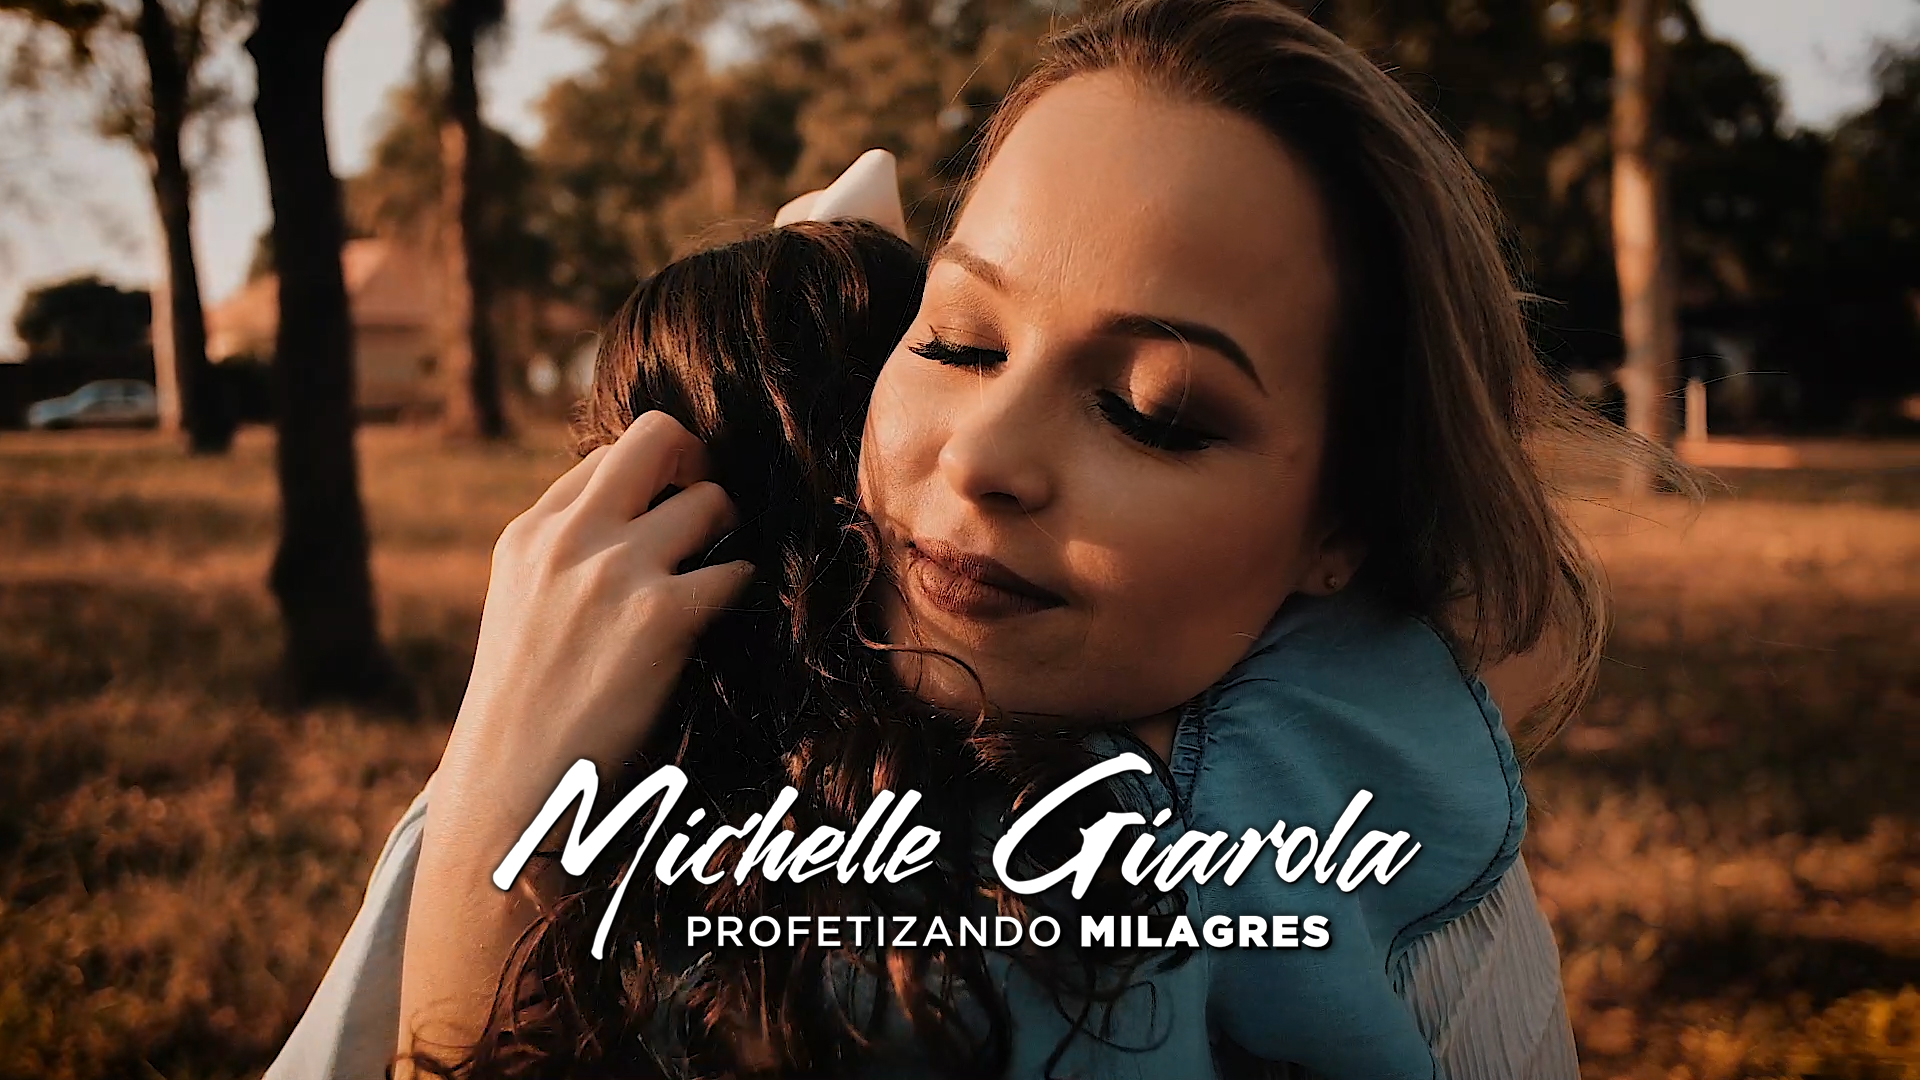 Michelle Giarola e a filha Mellina no surpreendente Lyric Vídeo “Profetizando Milagres”